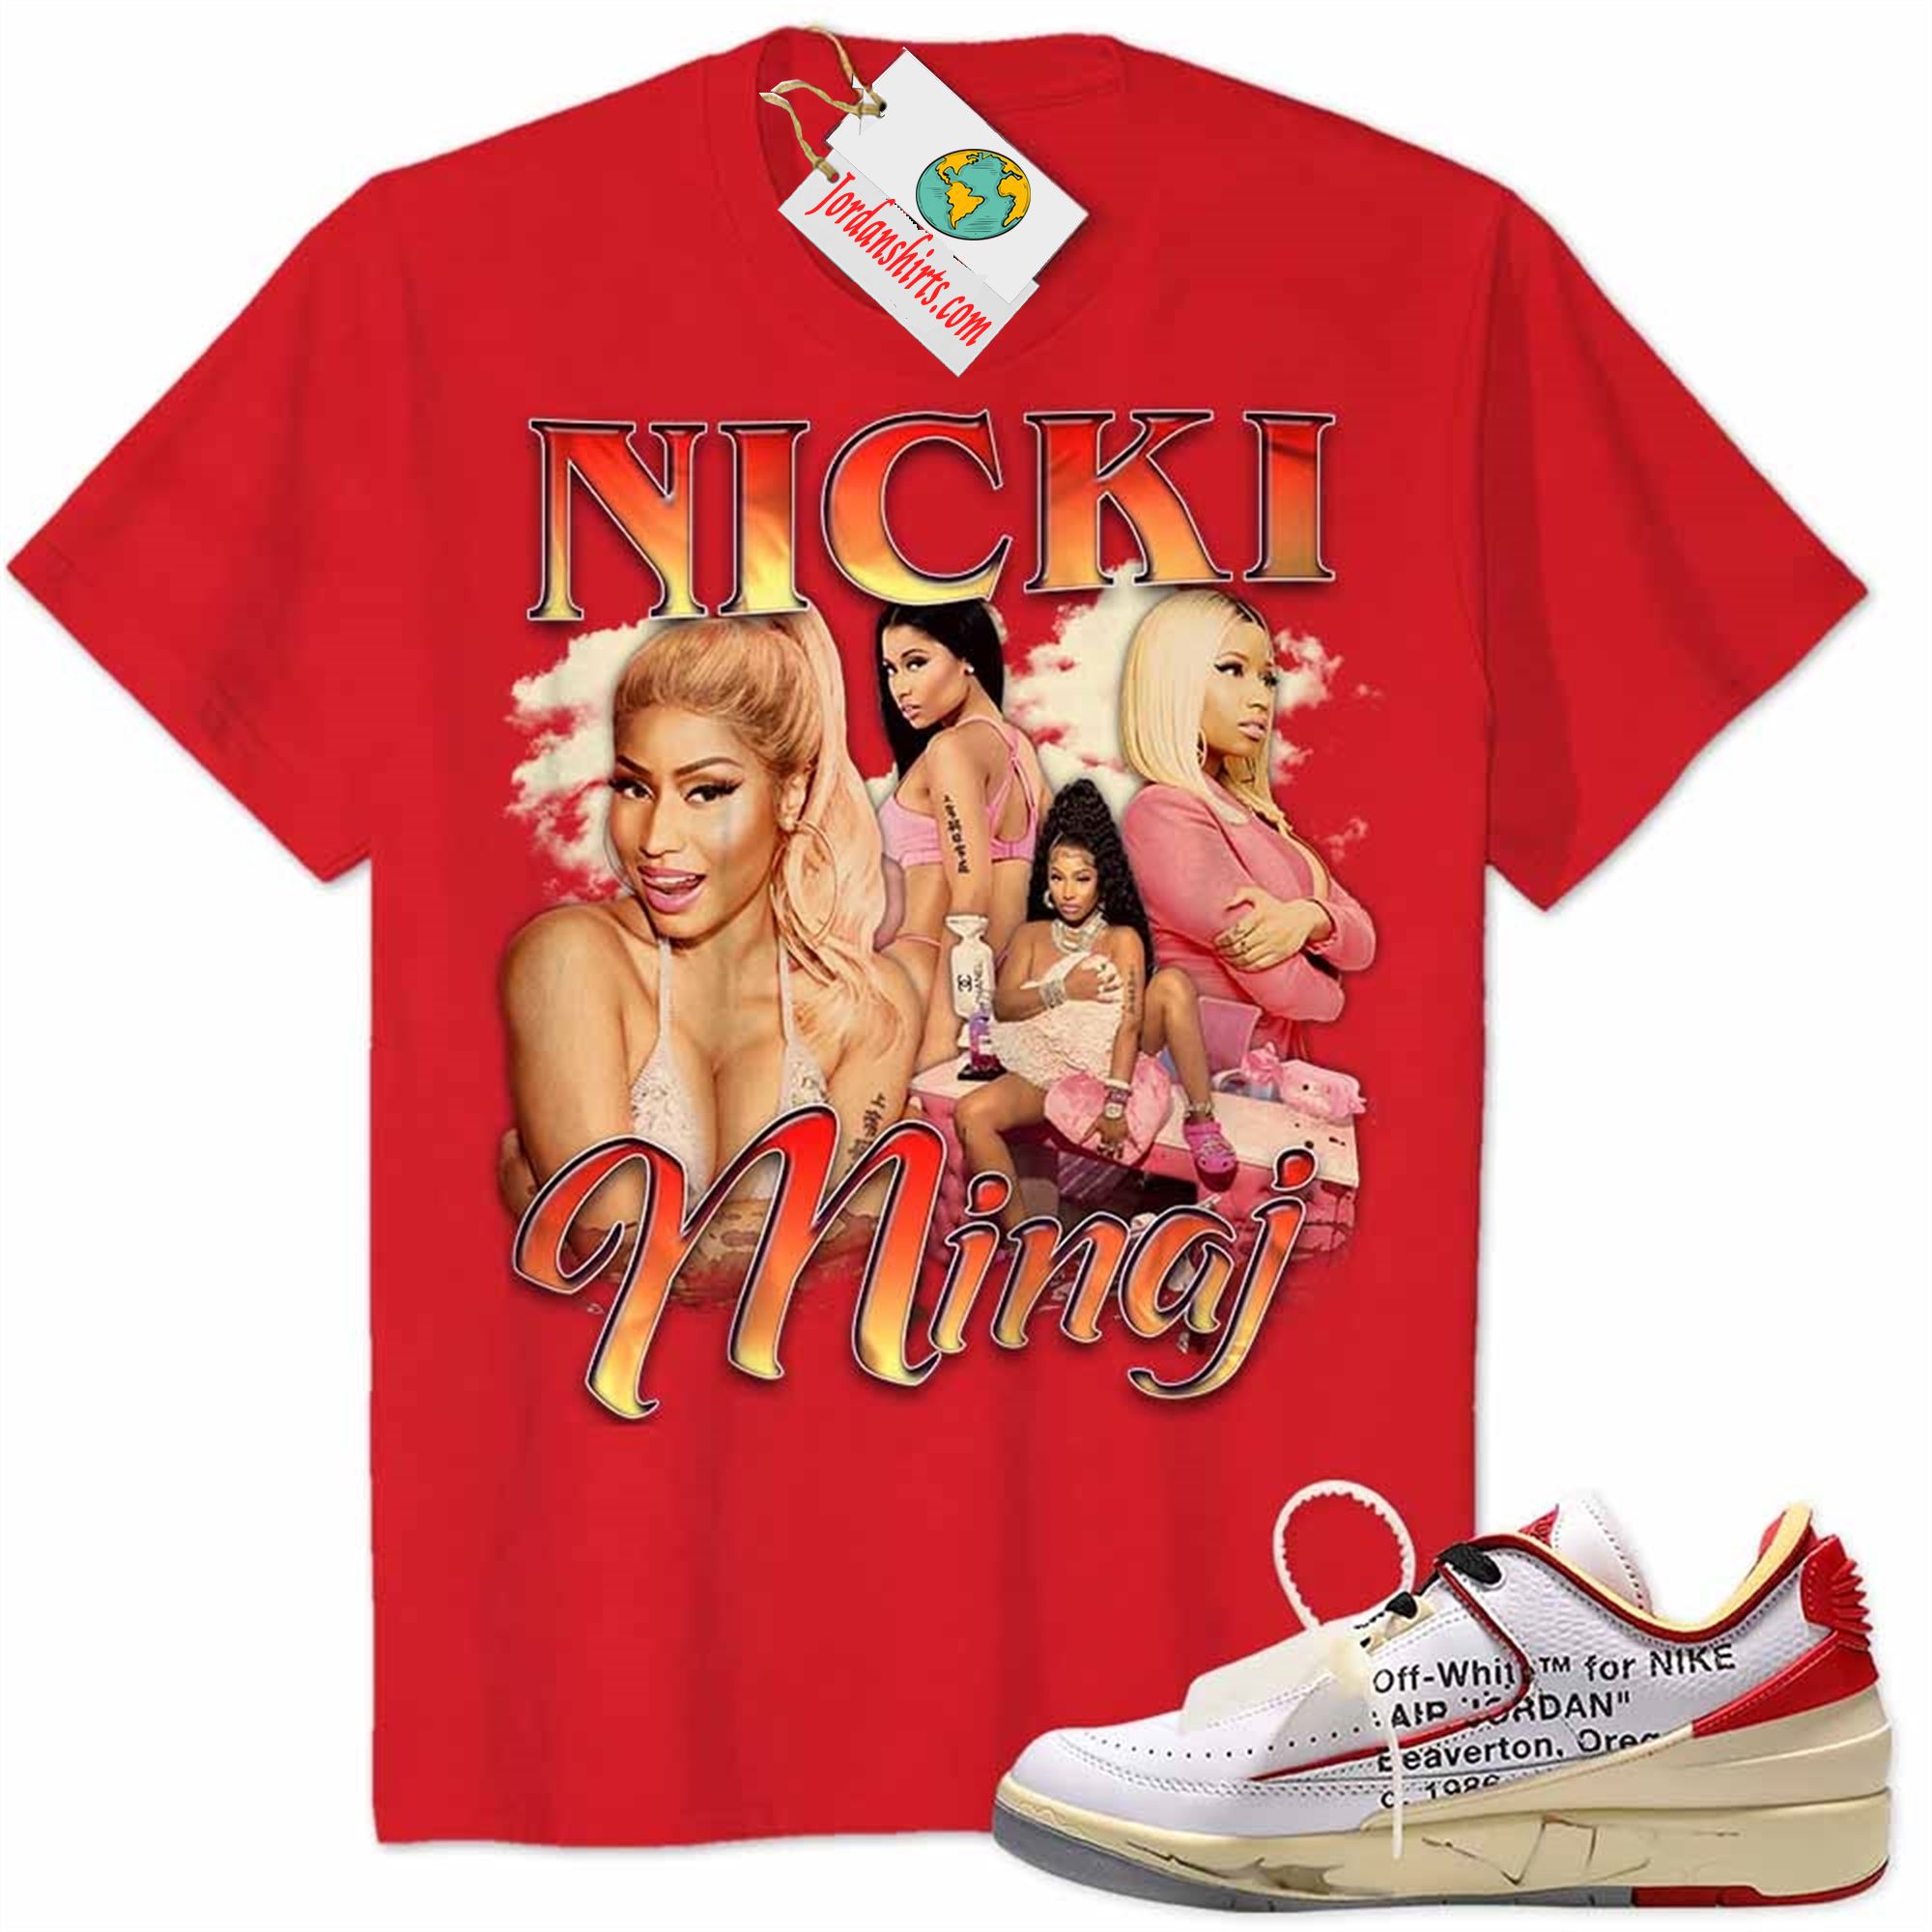 Jordan 2 Shirt, Nicki Minaj Graphic Red Air Jordan 2 Low White Red Off-white 2s Plus Size Up To 5xl